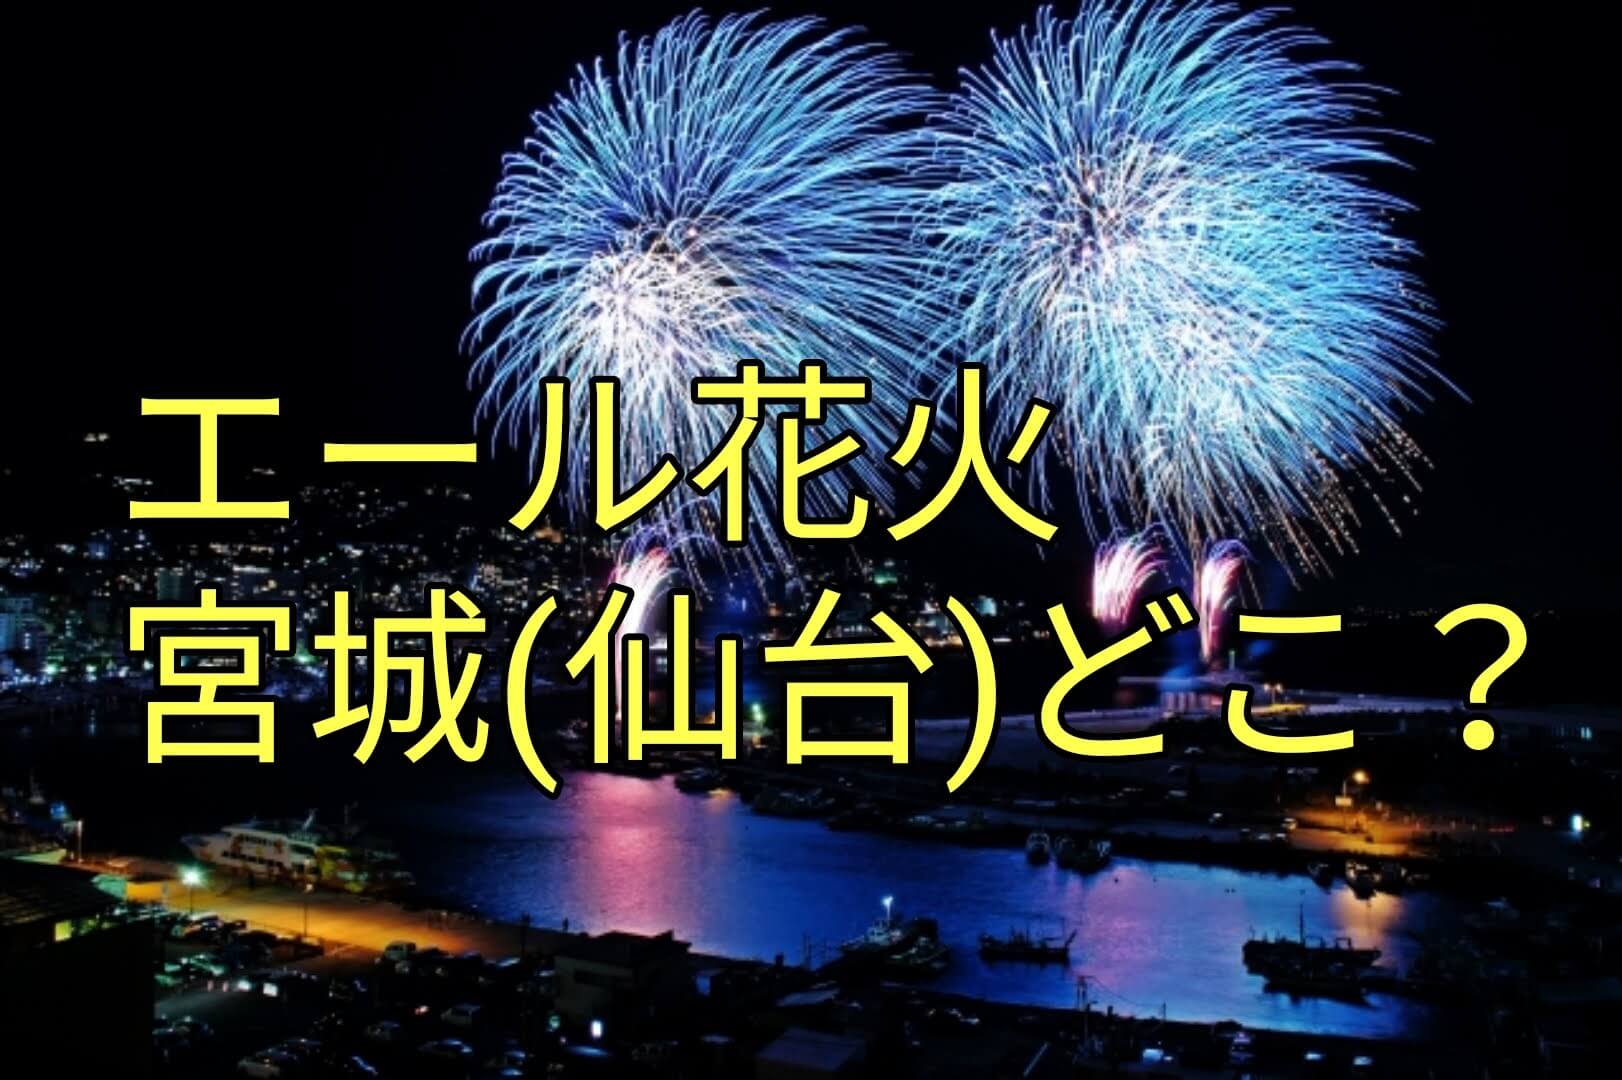 東京 エール 花火 22日夜に「エール花火」実施、全国28都県66カ所で一斉に打ち上げ